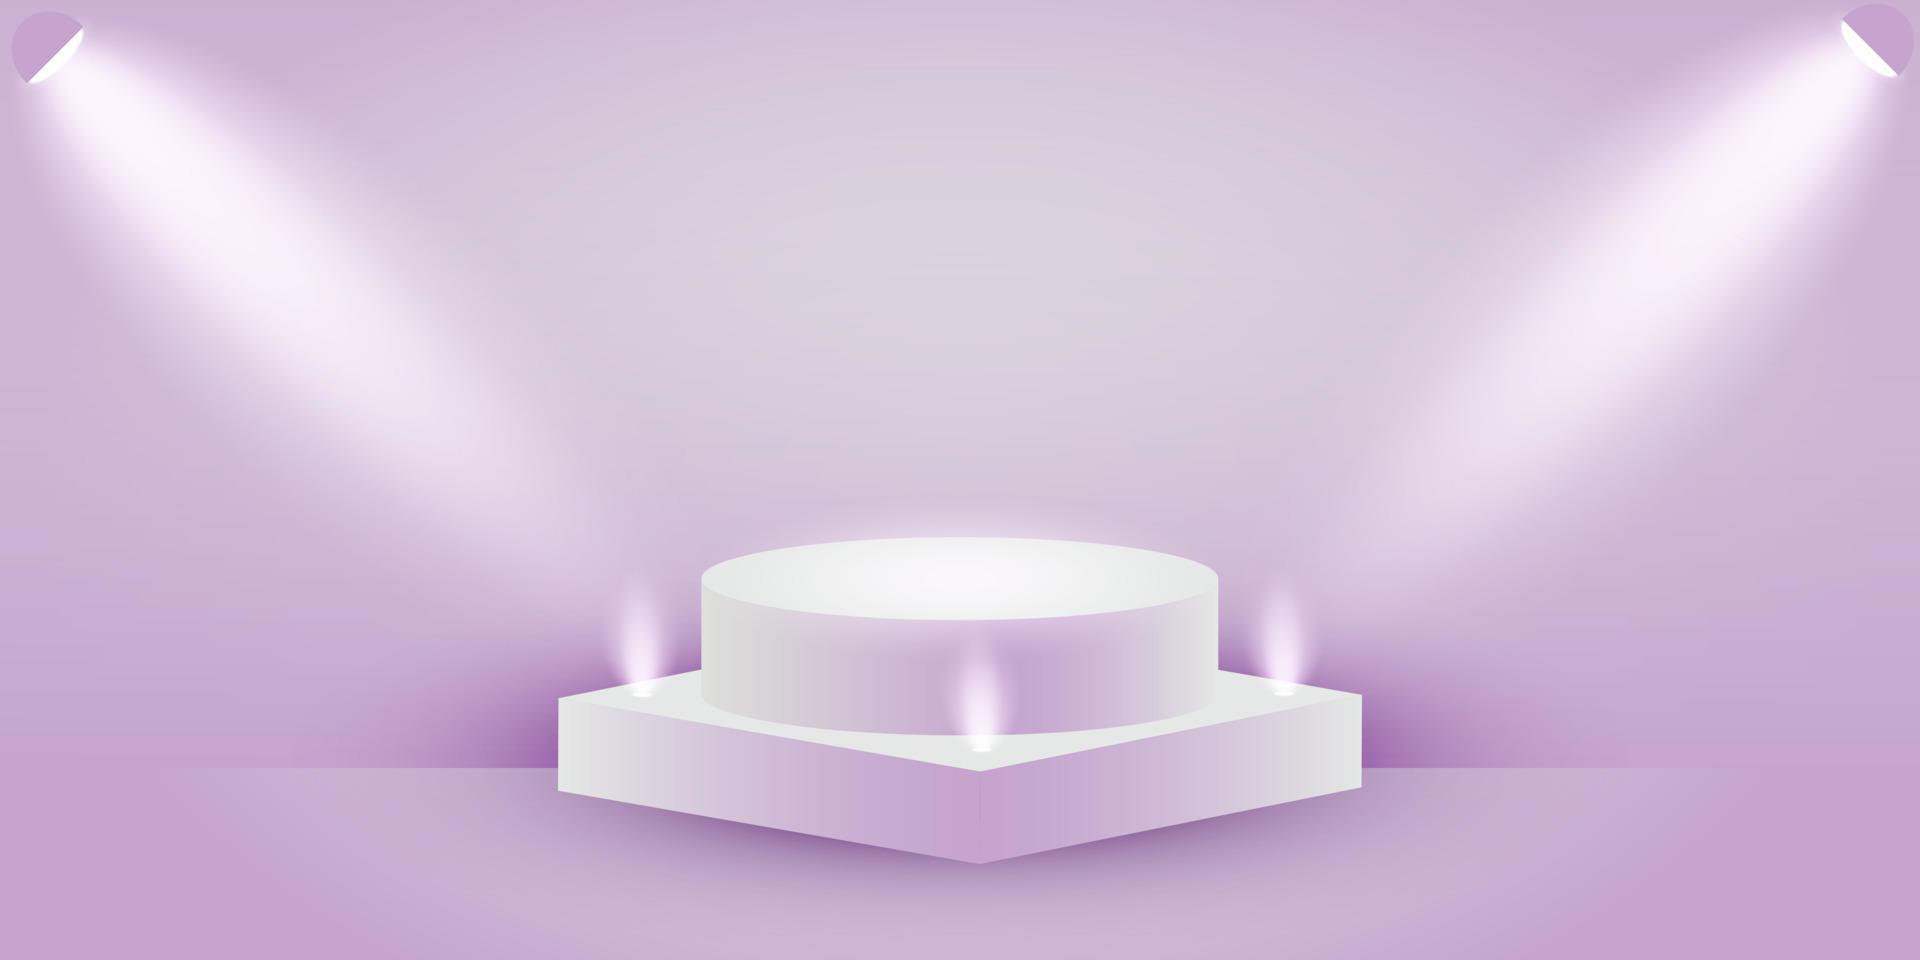 scena geometrica 3d con retroilluminazione lilla. podio lilla pastello con luce soffusa. Visualizzazione 3d della scena per la presentazione dei prodotti. sfondo vettoriale viola.